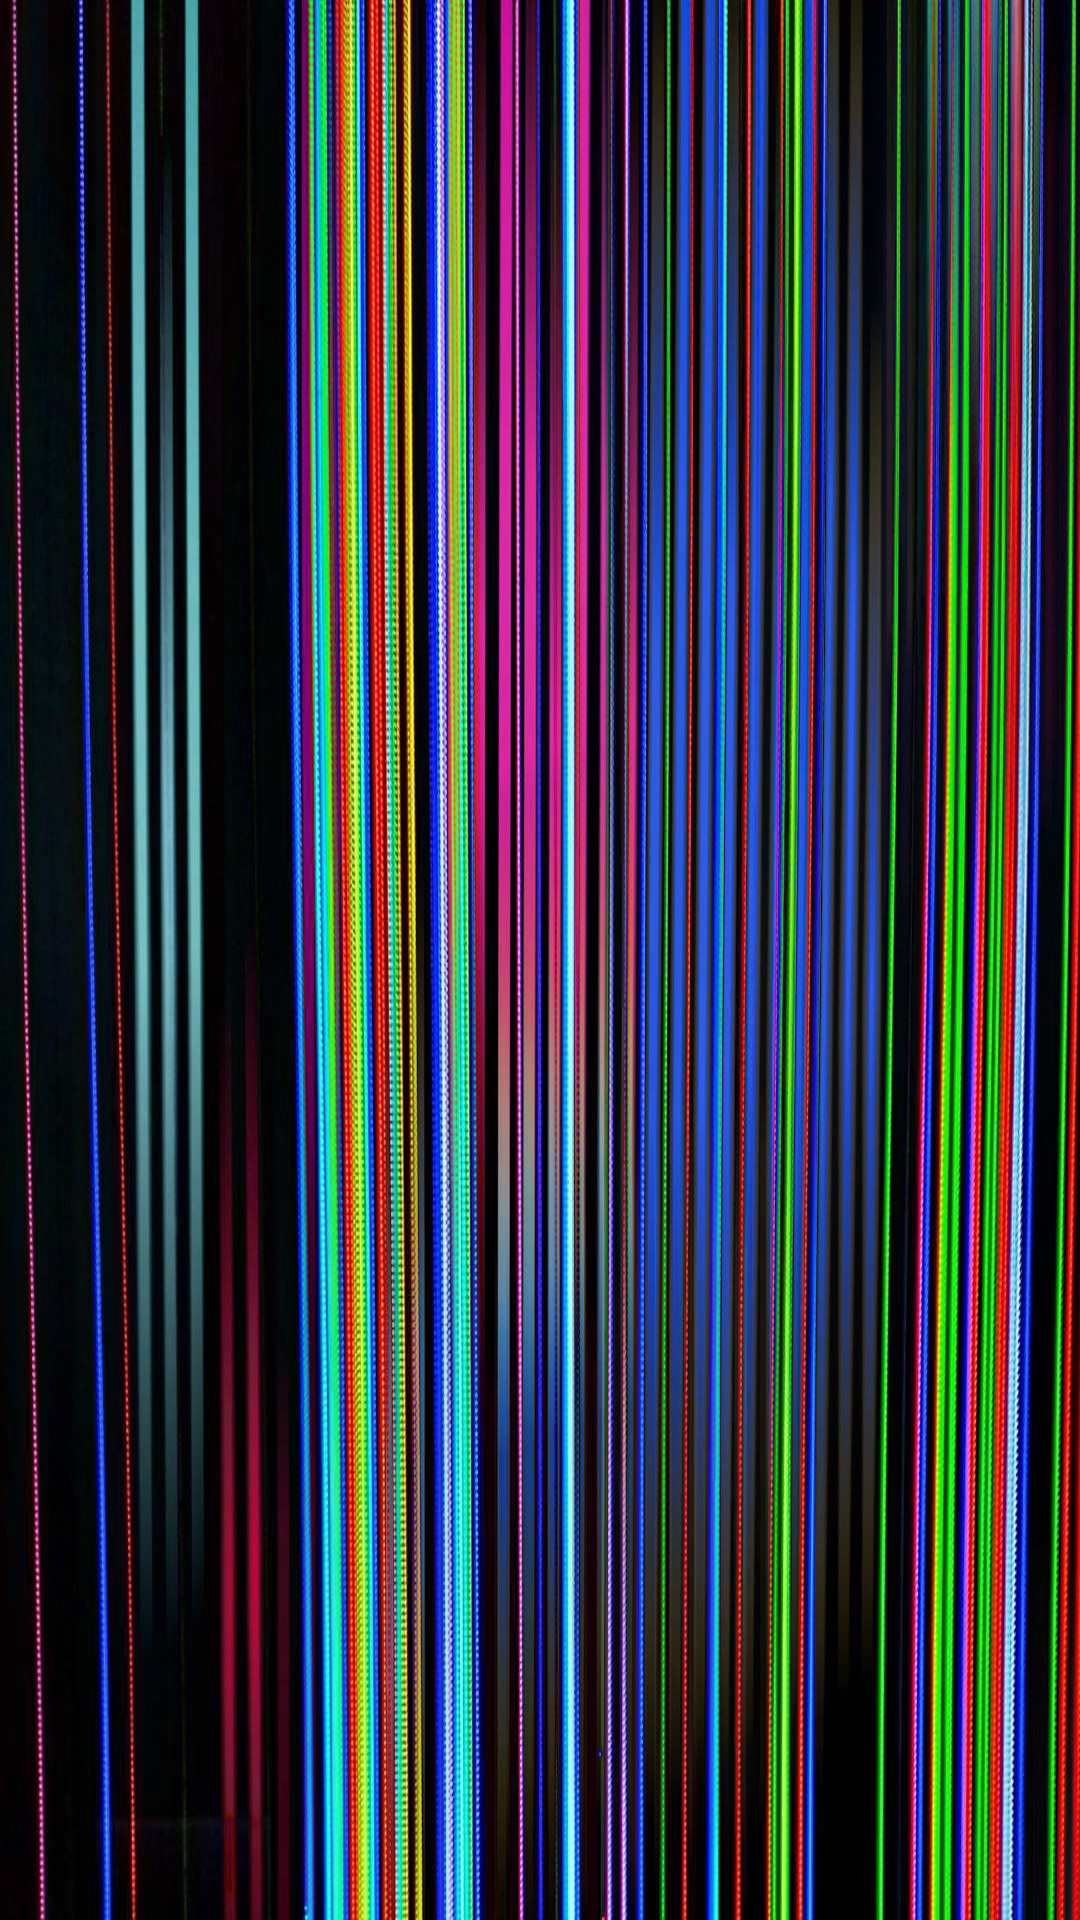 Broken Screen Vertical Lines on iPhone